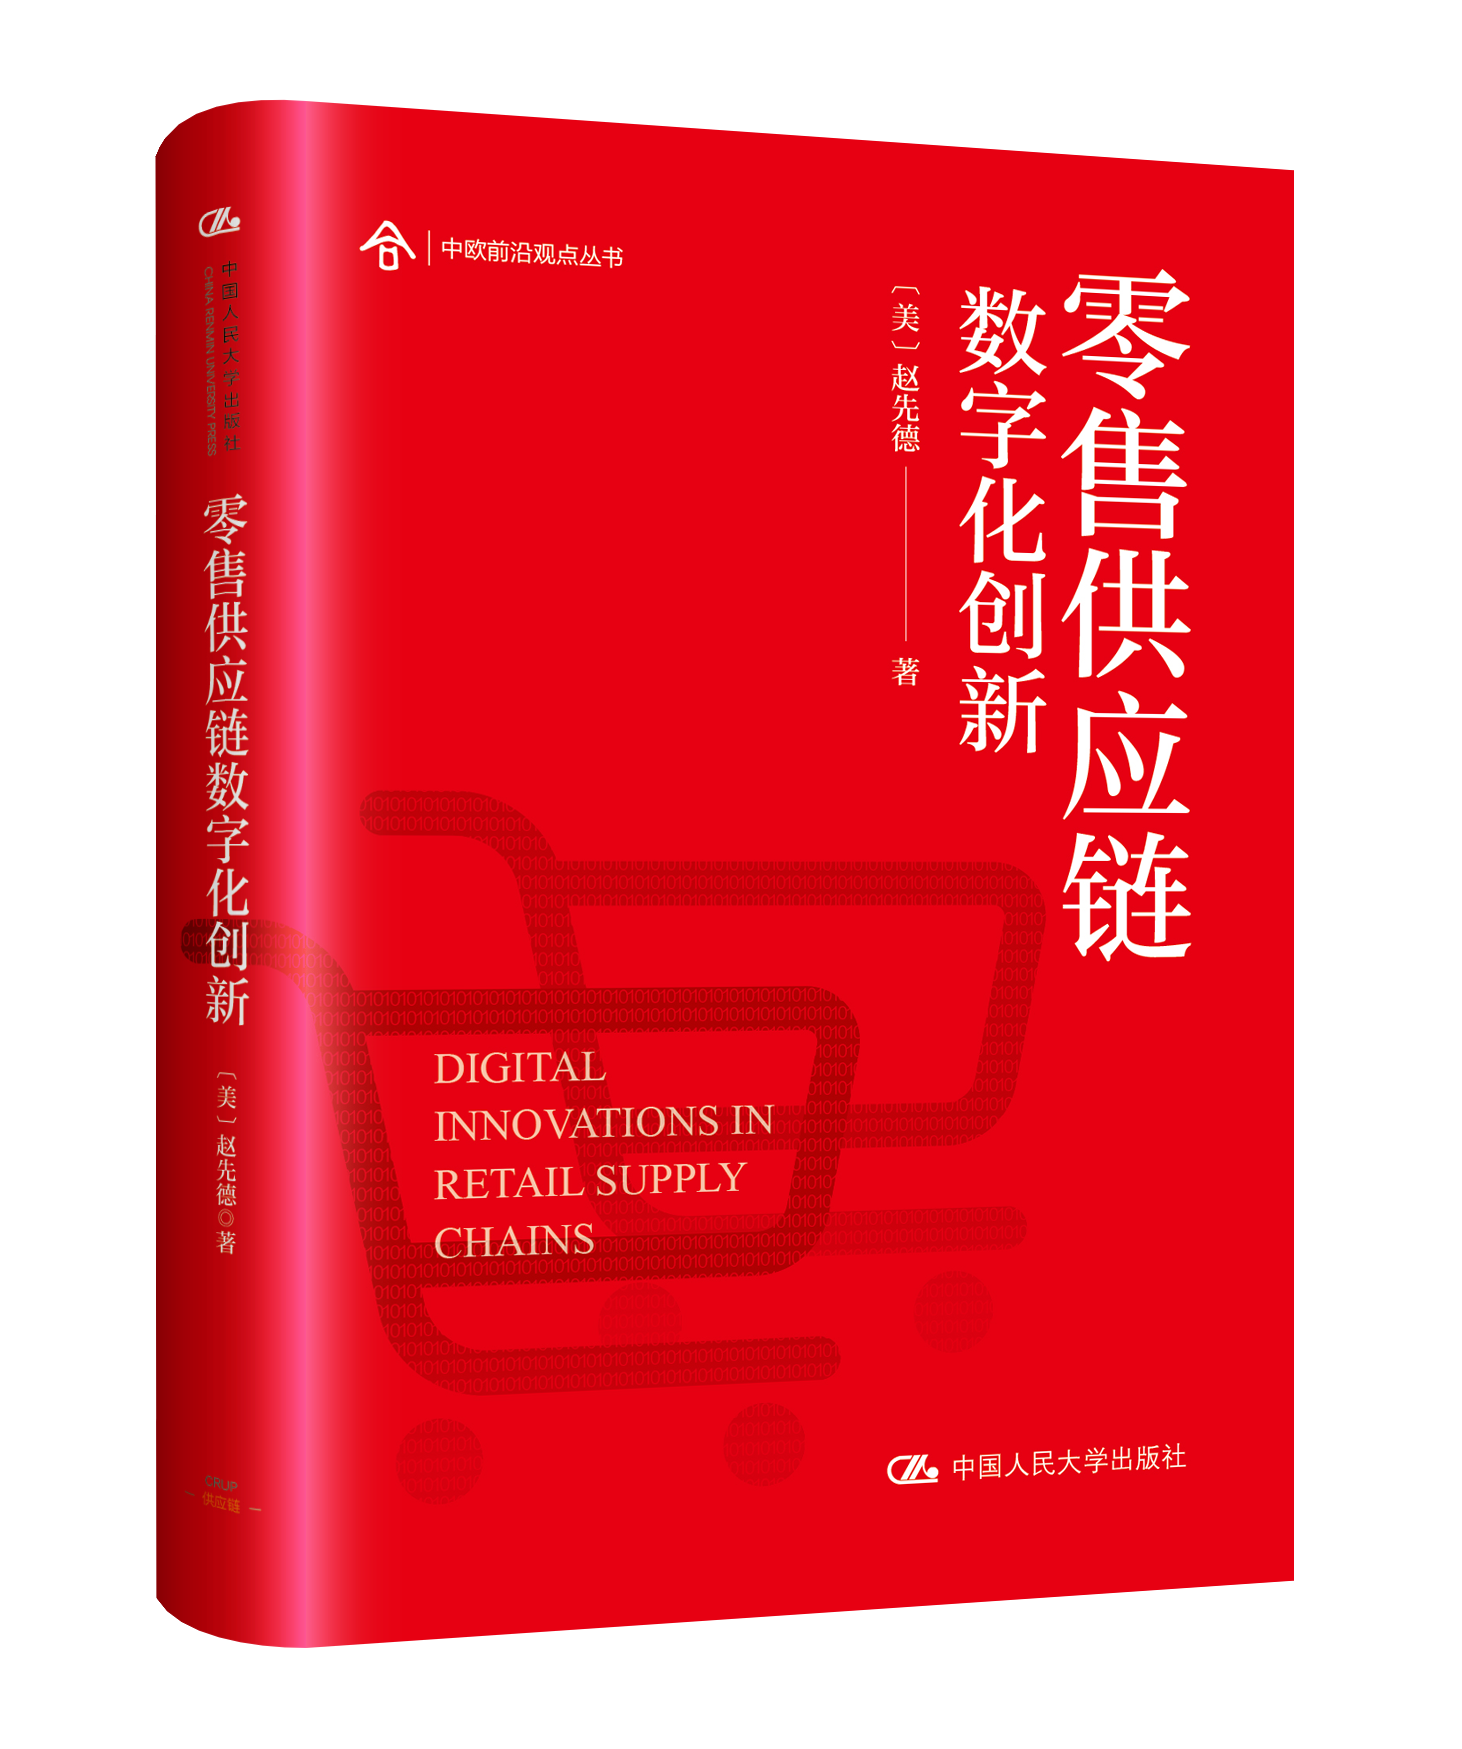 赵先德 · 新书 |零售供应链数字化创新